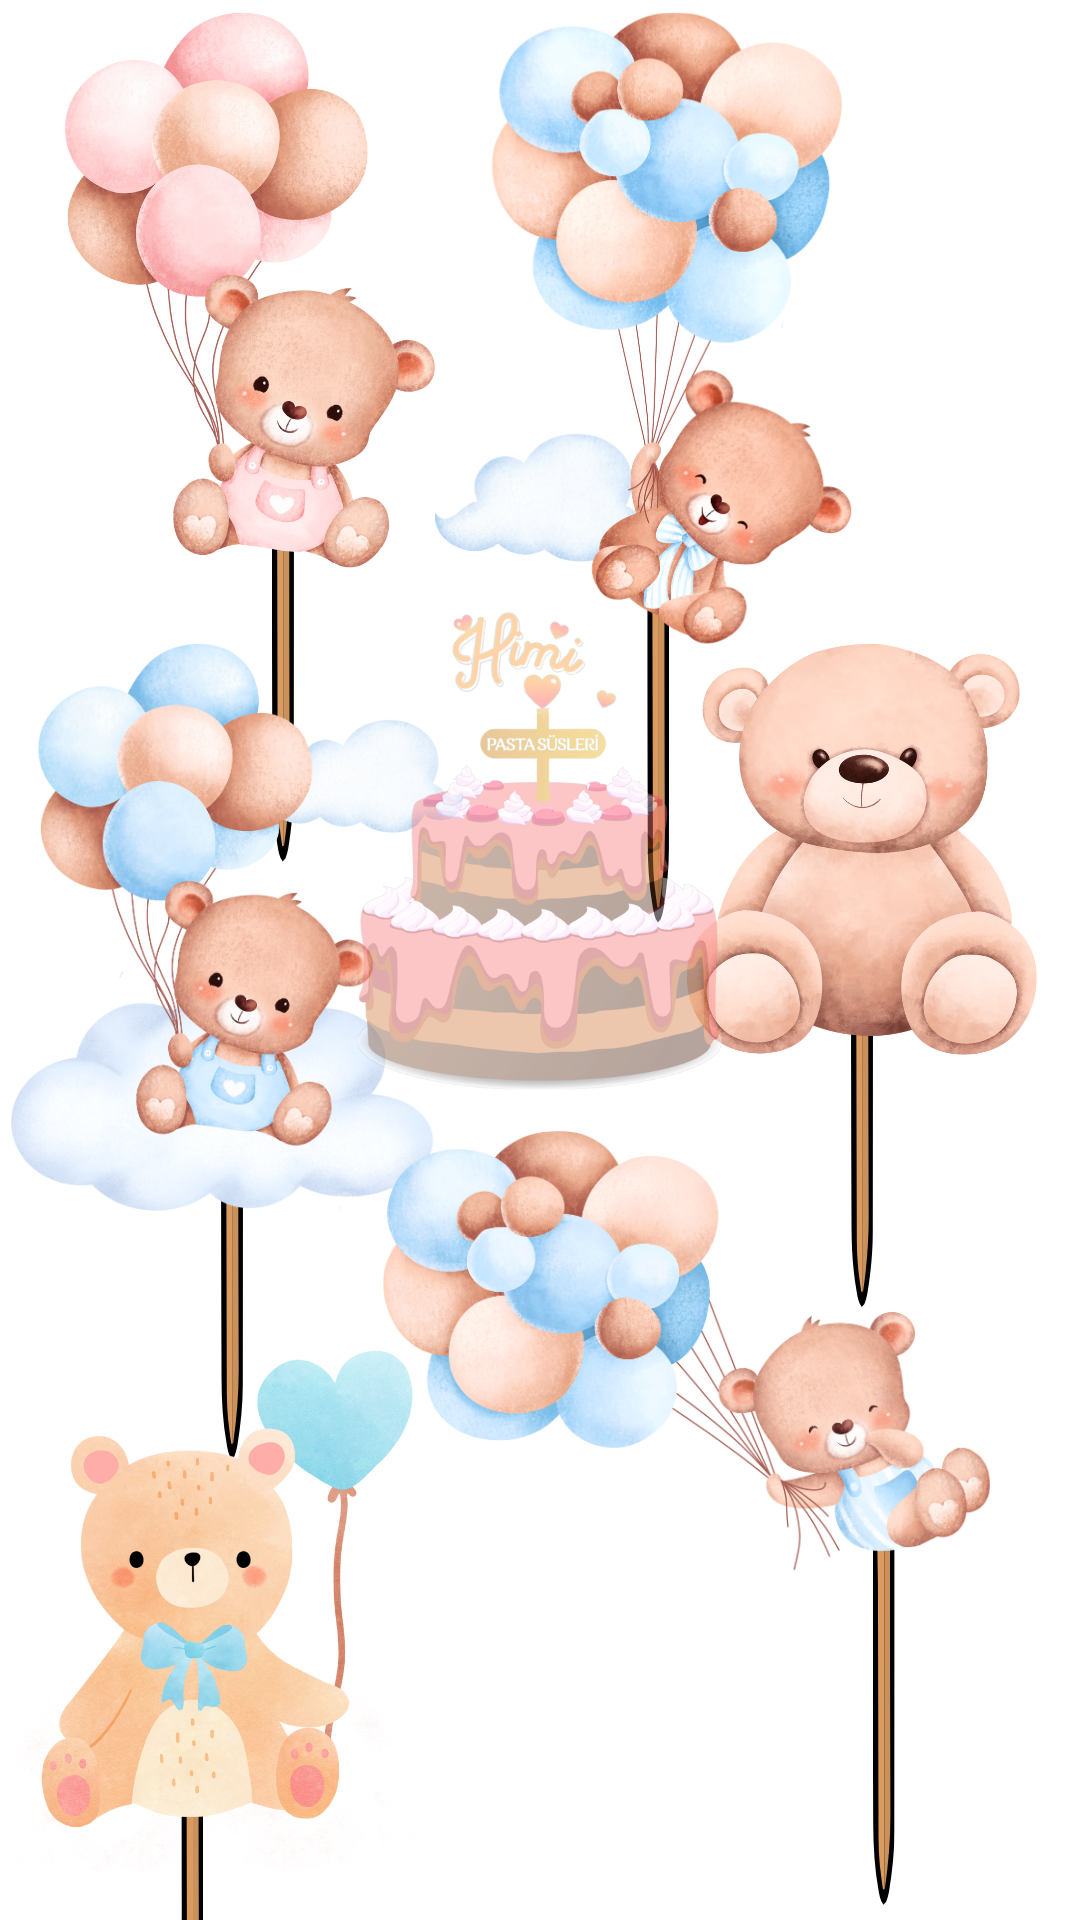 Balonlu Ayıcık Doğum Günü Pasta Süsleri Kız Erkek Çocuk Maket Pasta Kürdanı Cupcake Kürdan Süsü M63